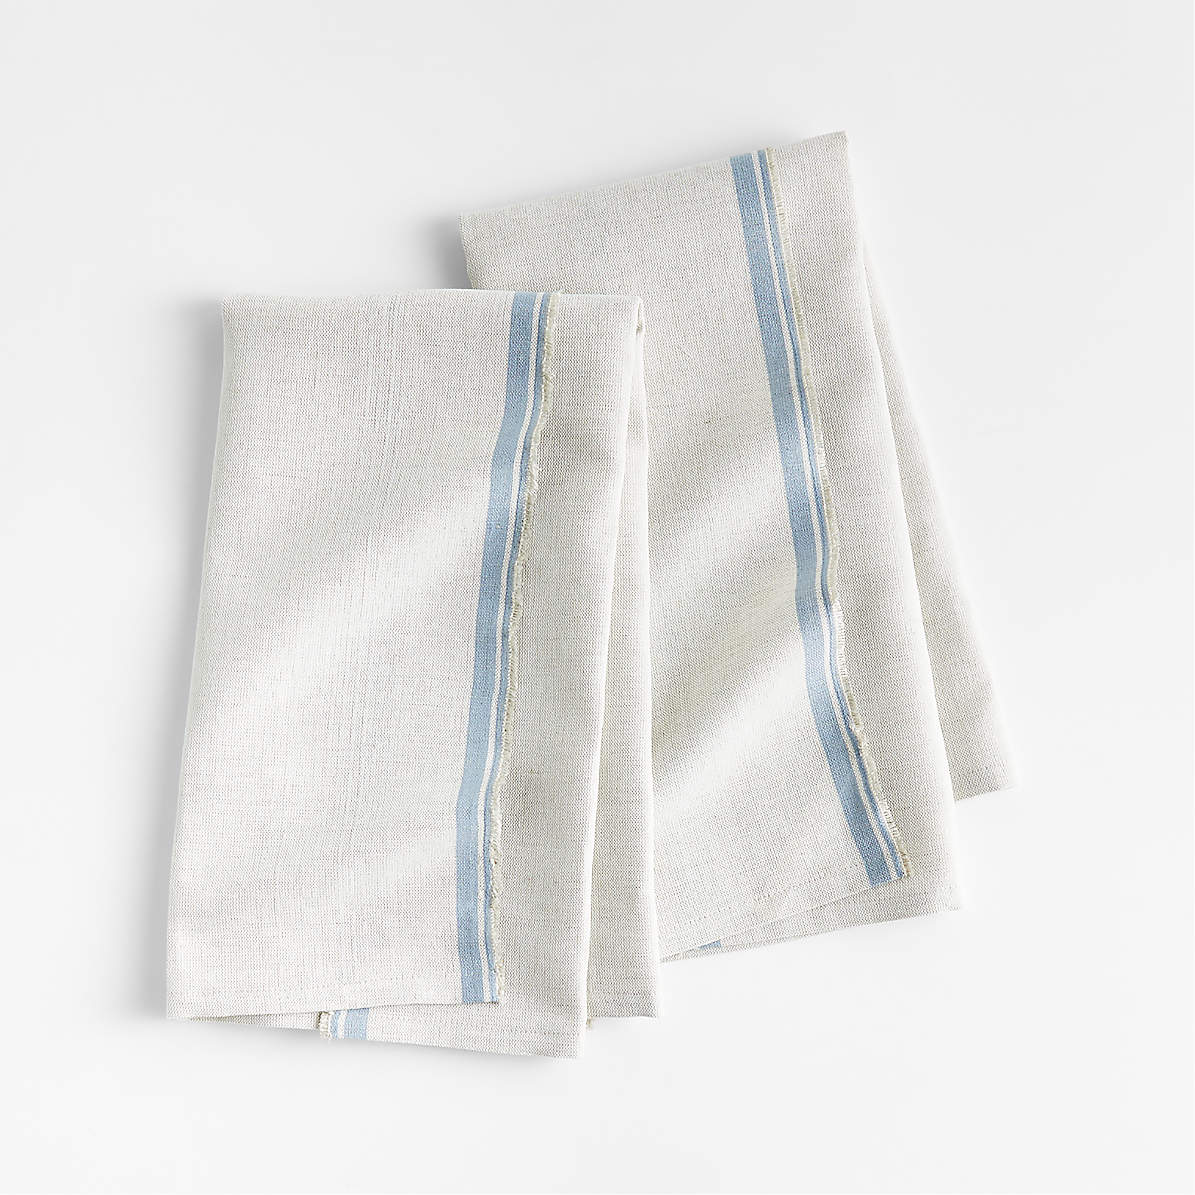 Clovis Blue Edge Cotton Tea Kitchen Dish Towels, Set of 2 +